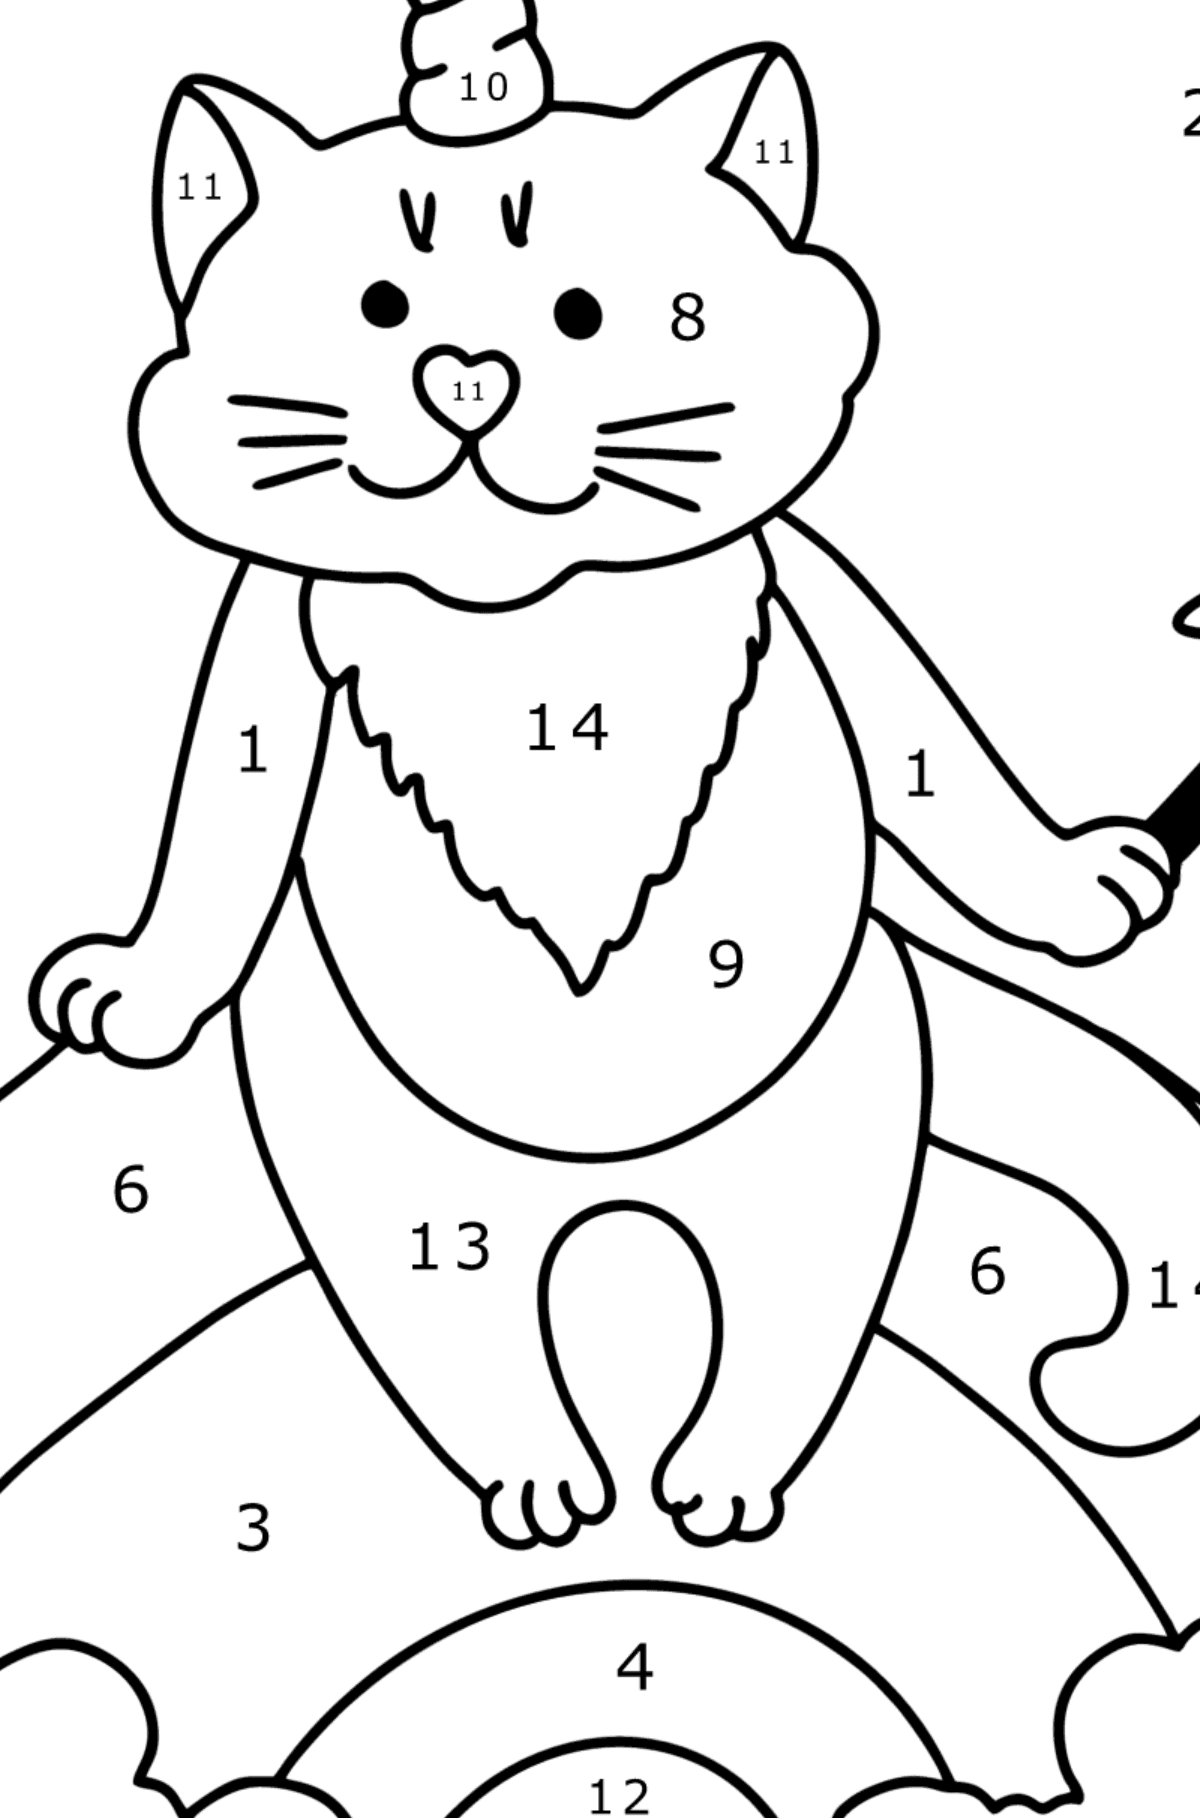 Tegning til farvning killing enhjørning - Farvelægning side af tallene for børn